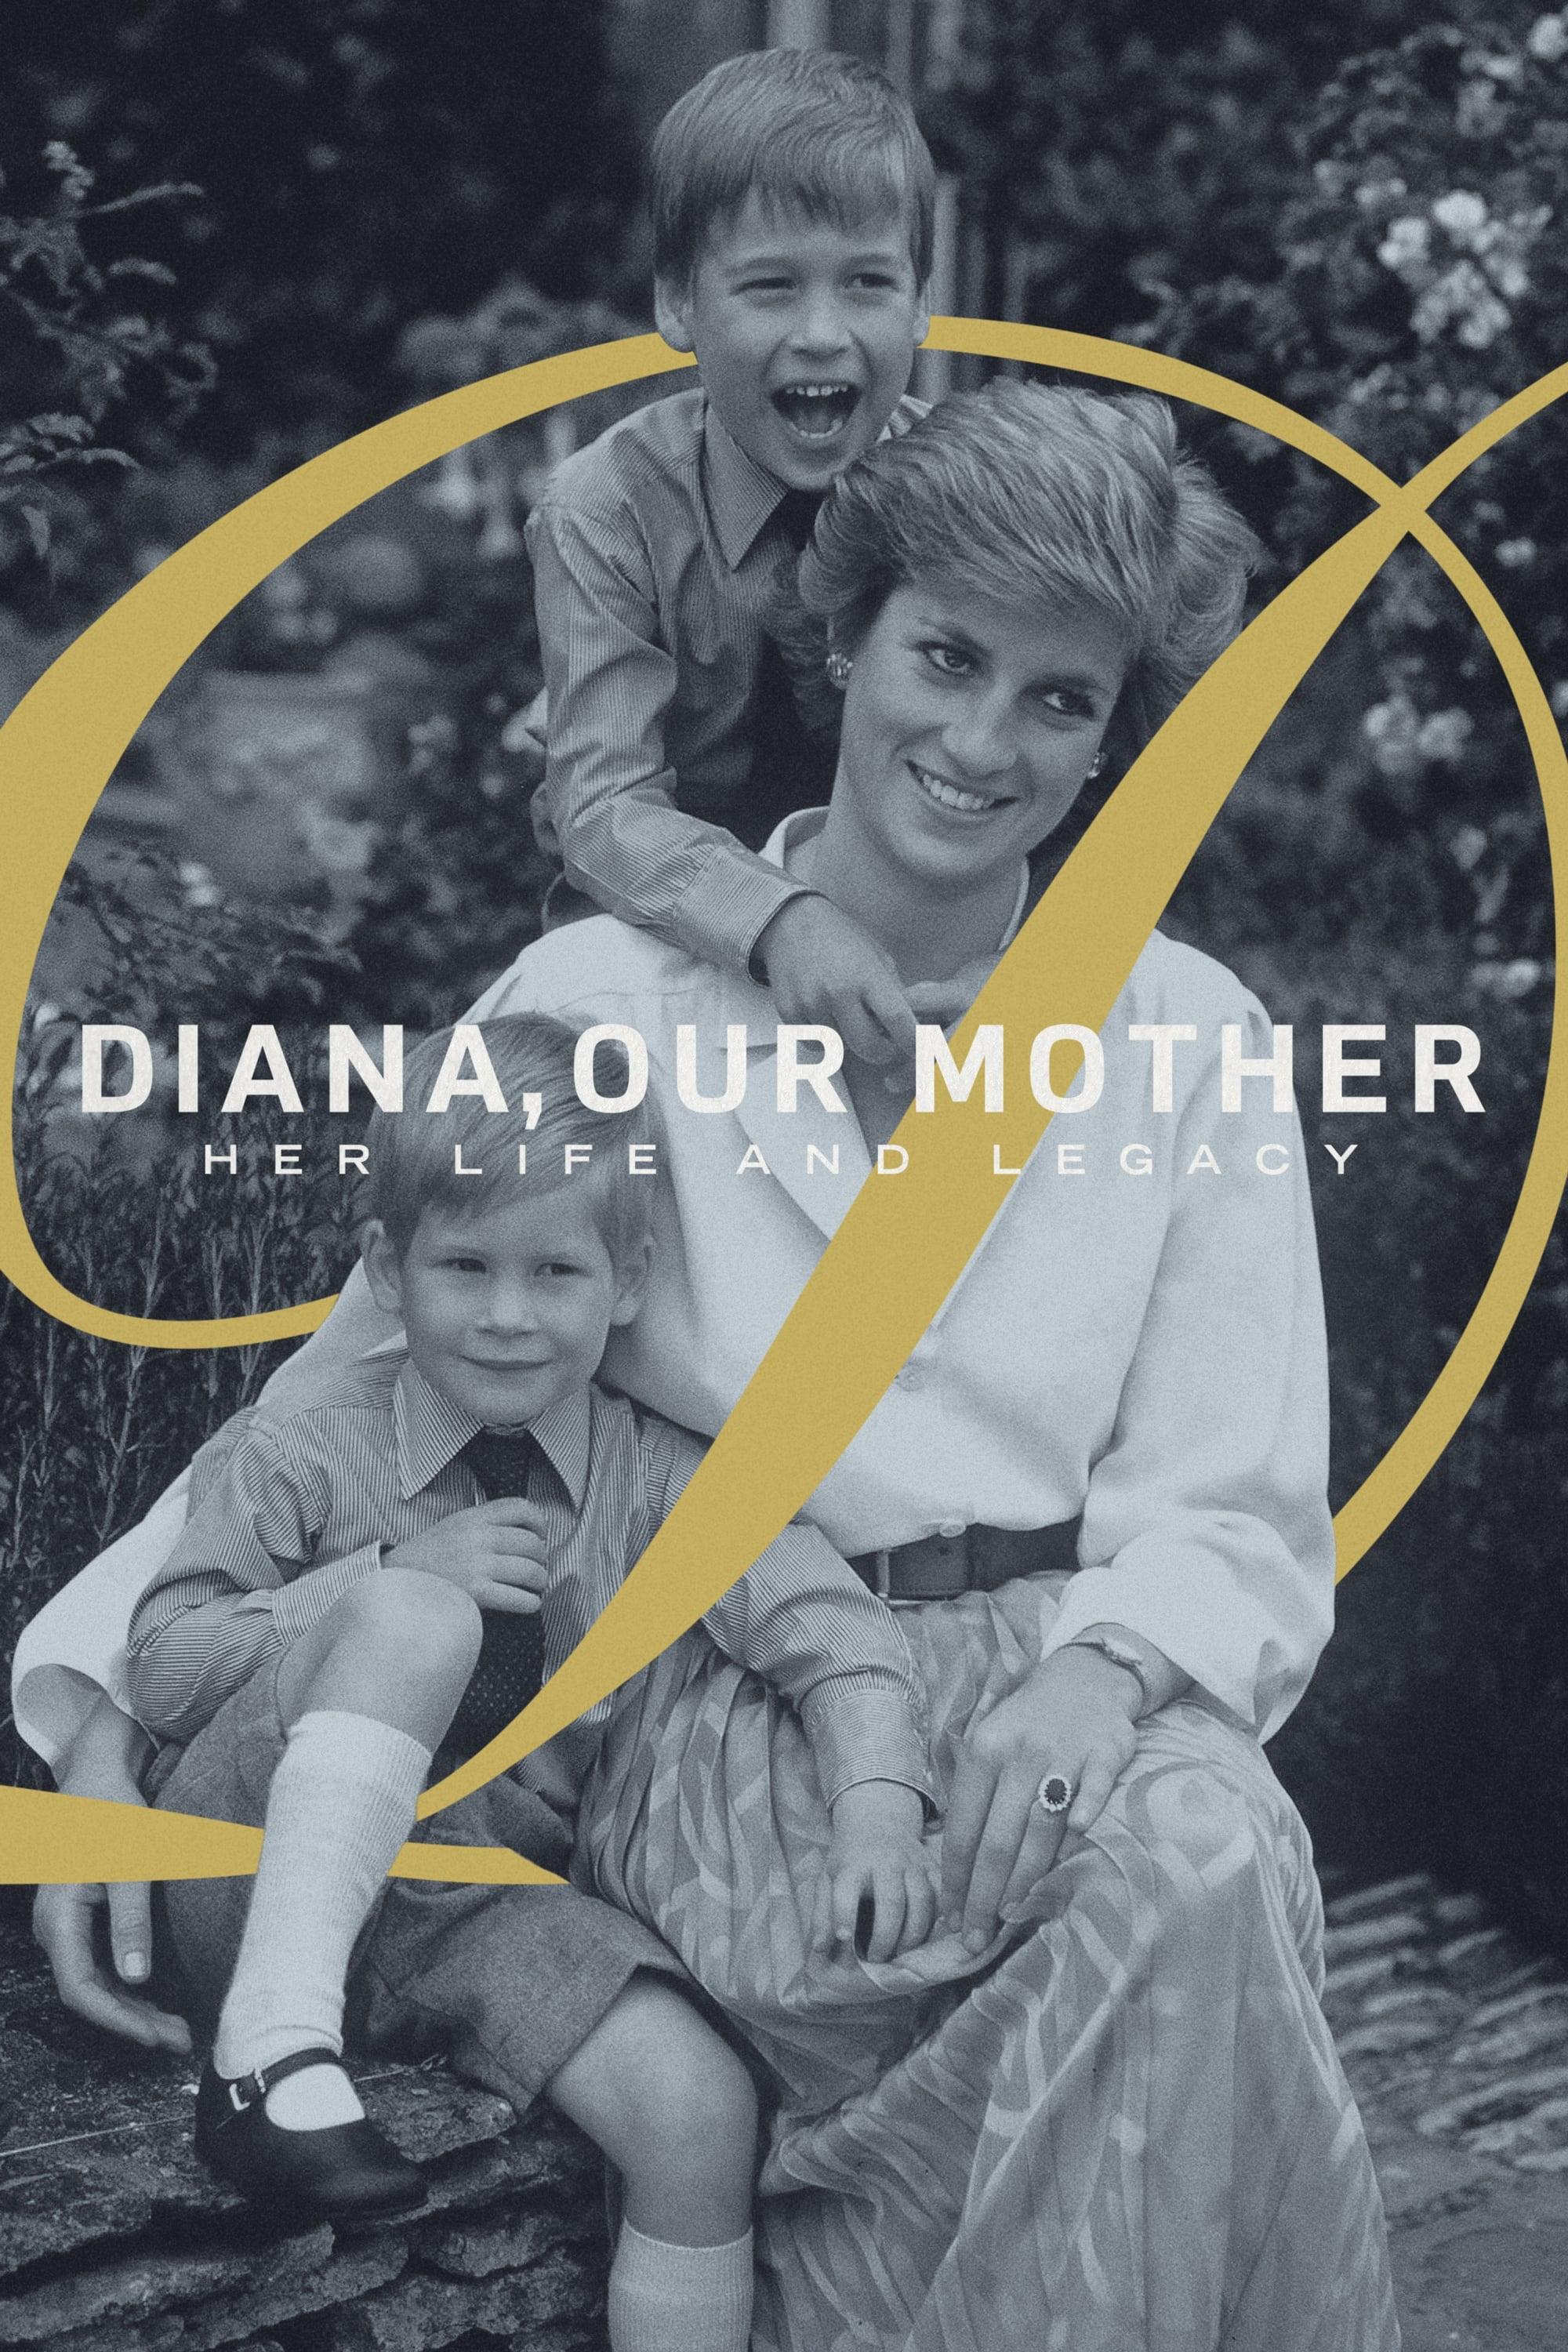 Unsere Mutter Diana - Ihr Leben und ihr Vermächtnis poster